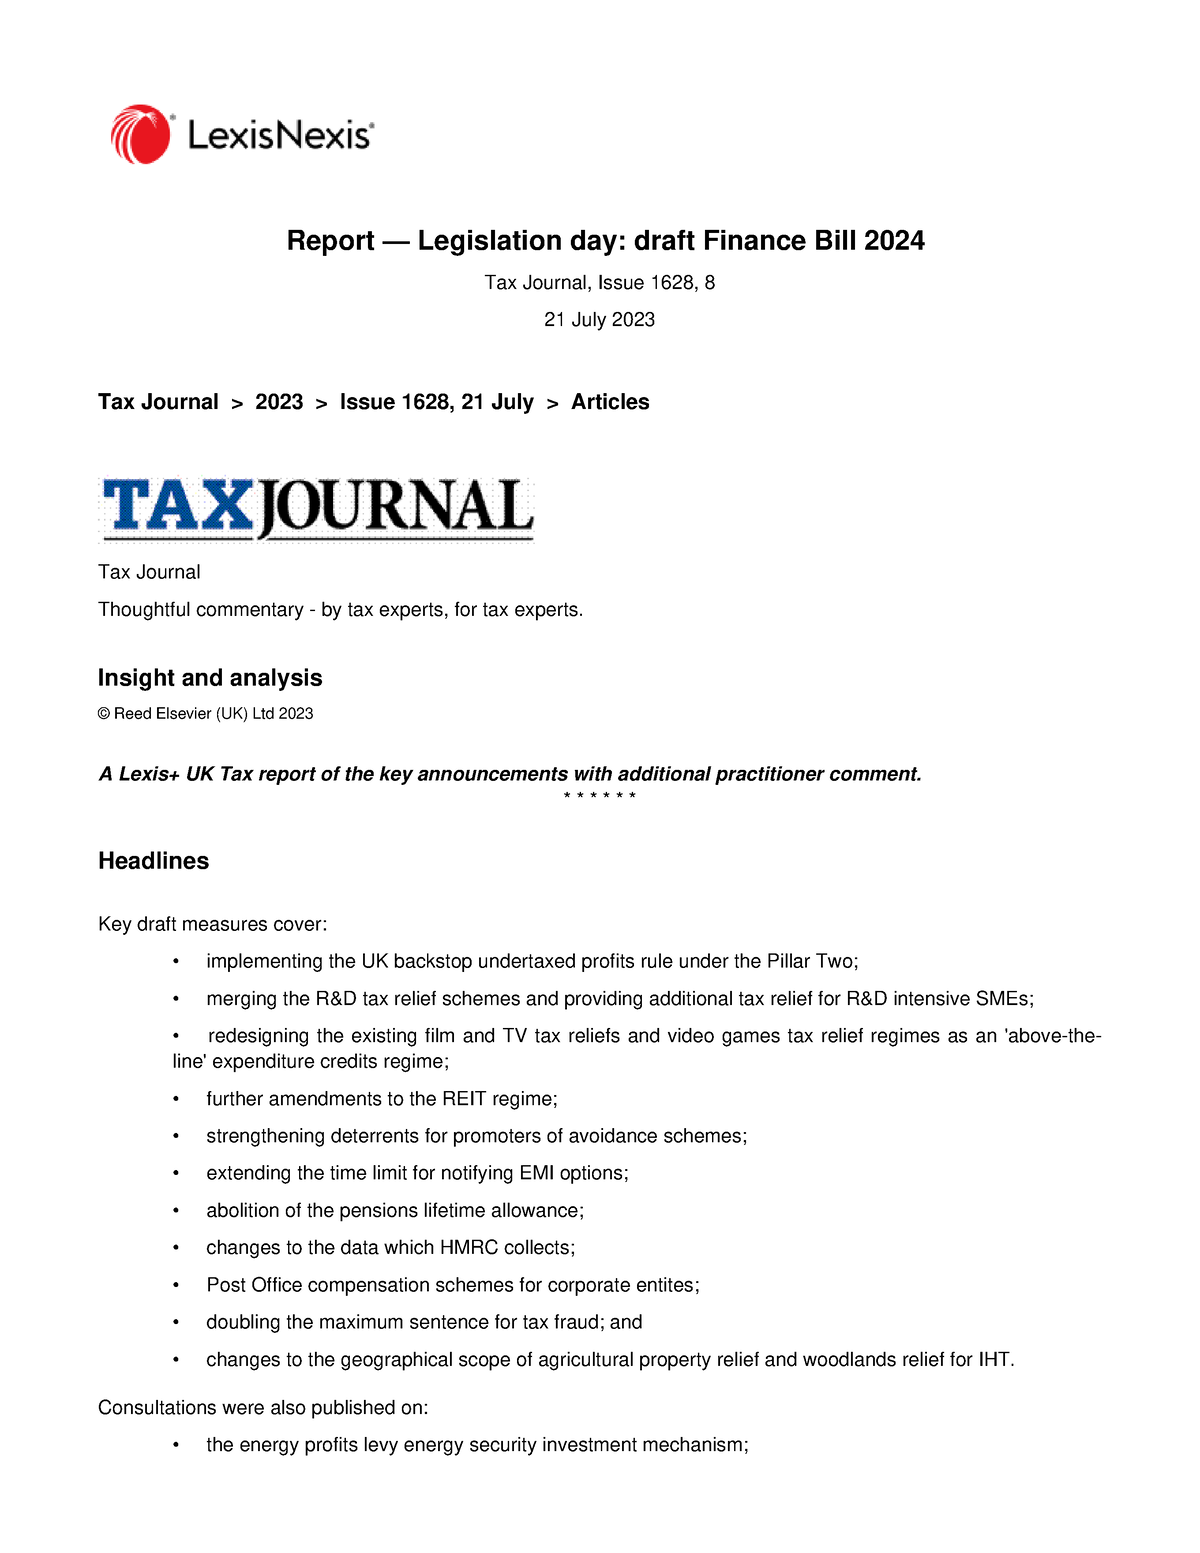 Report Legislation day draft Finance Bill 2024 Tax Journal, Issue